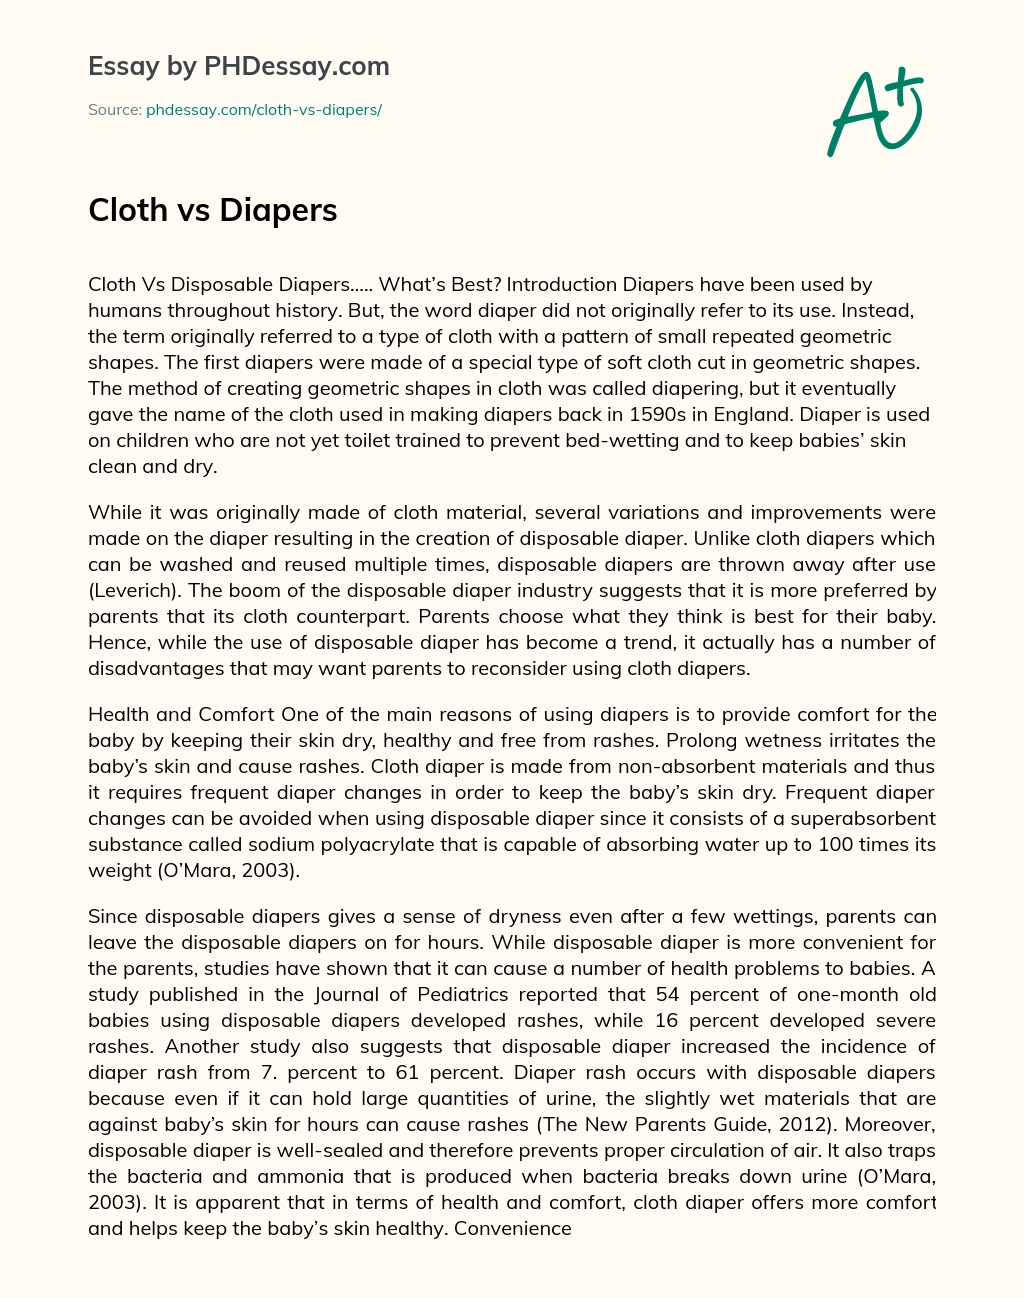 Cloth vs Diapers essay